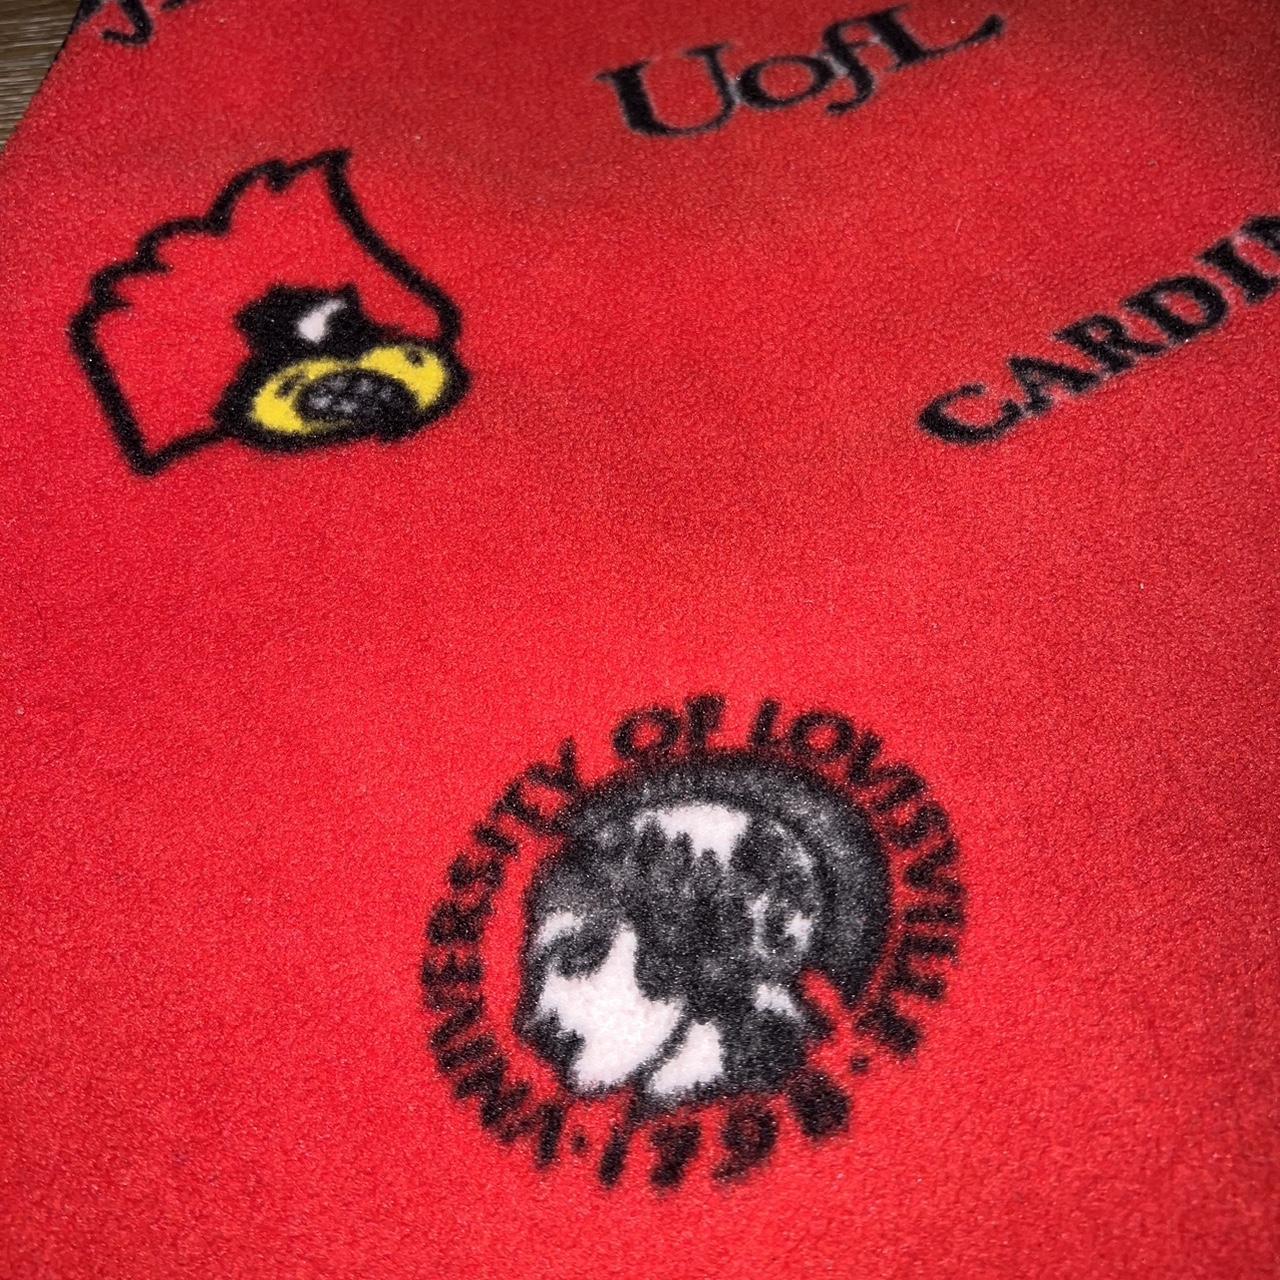 Vintage University of Louisville zip up hoodie - Depop